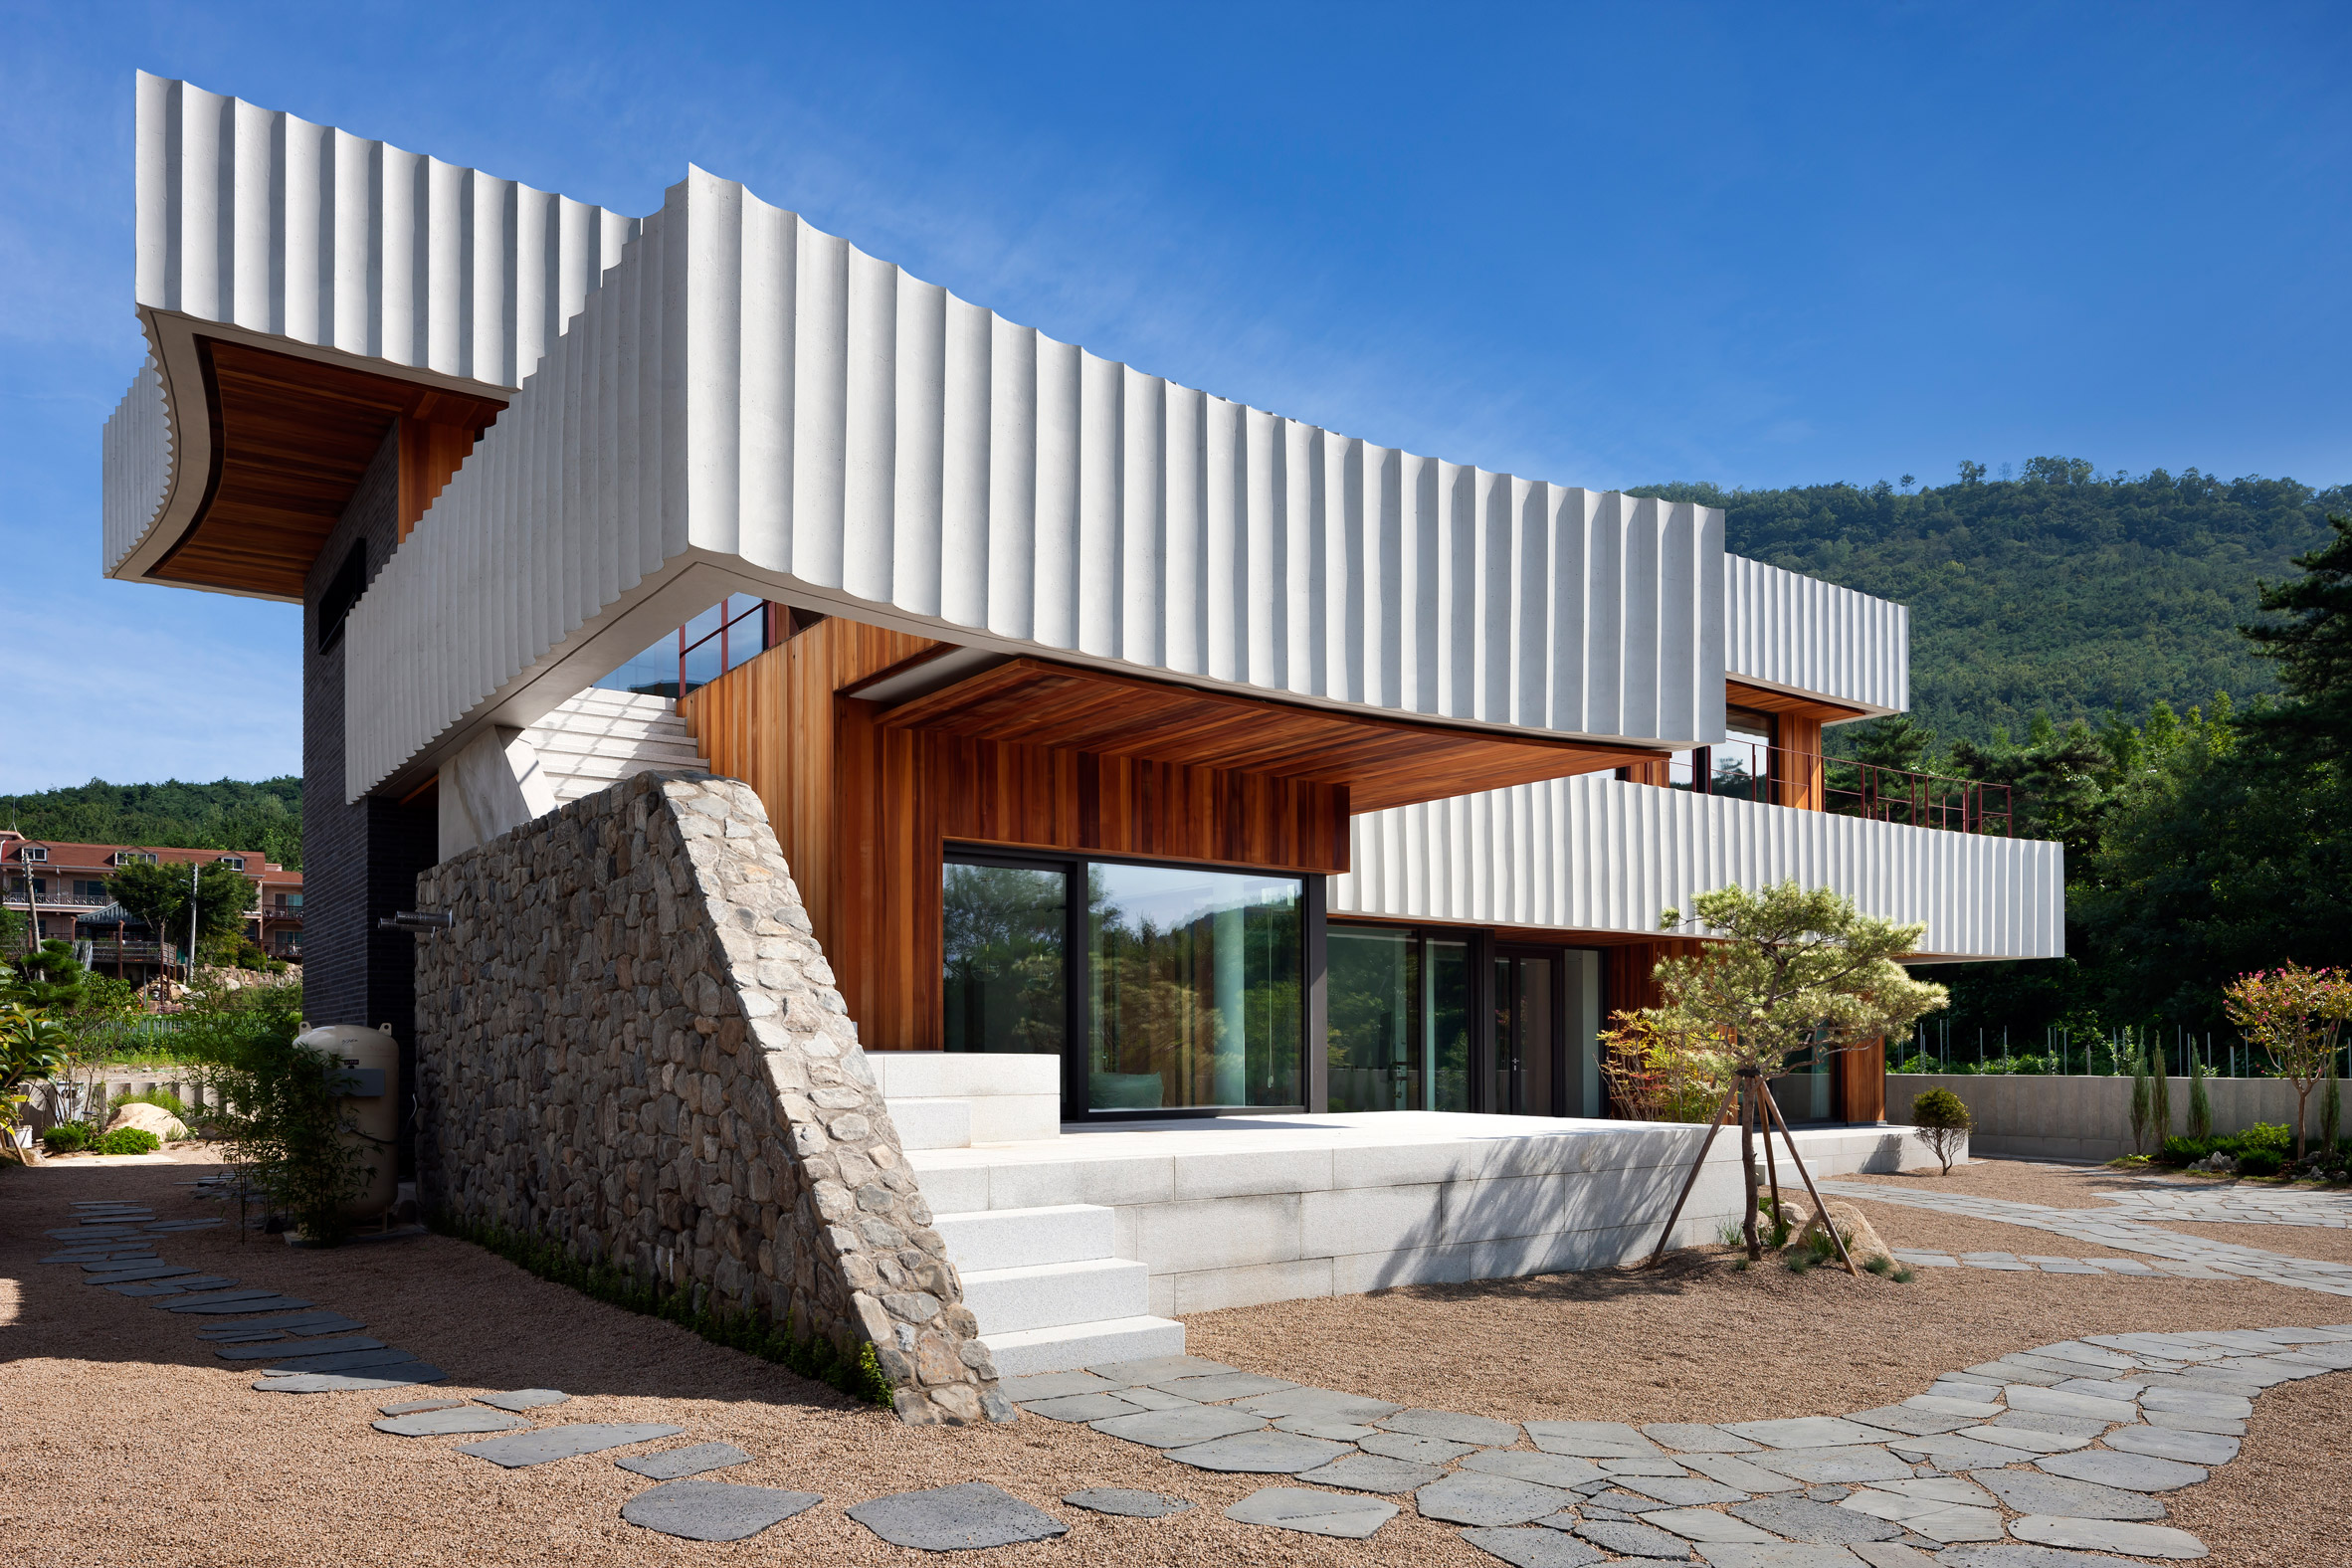 Concrete Wrap House In South Korea